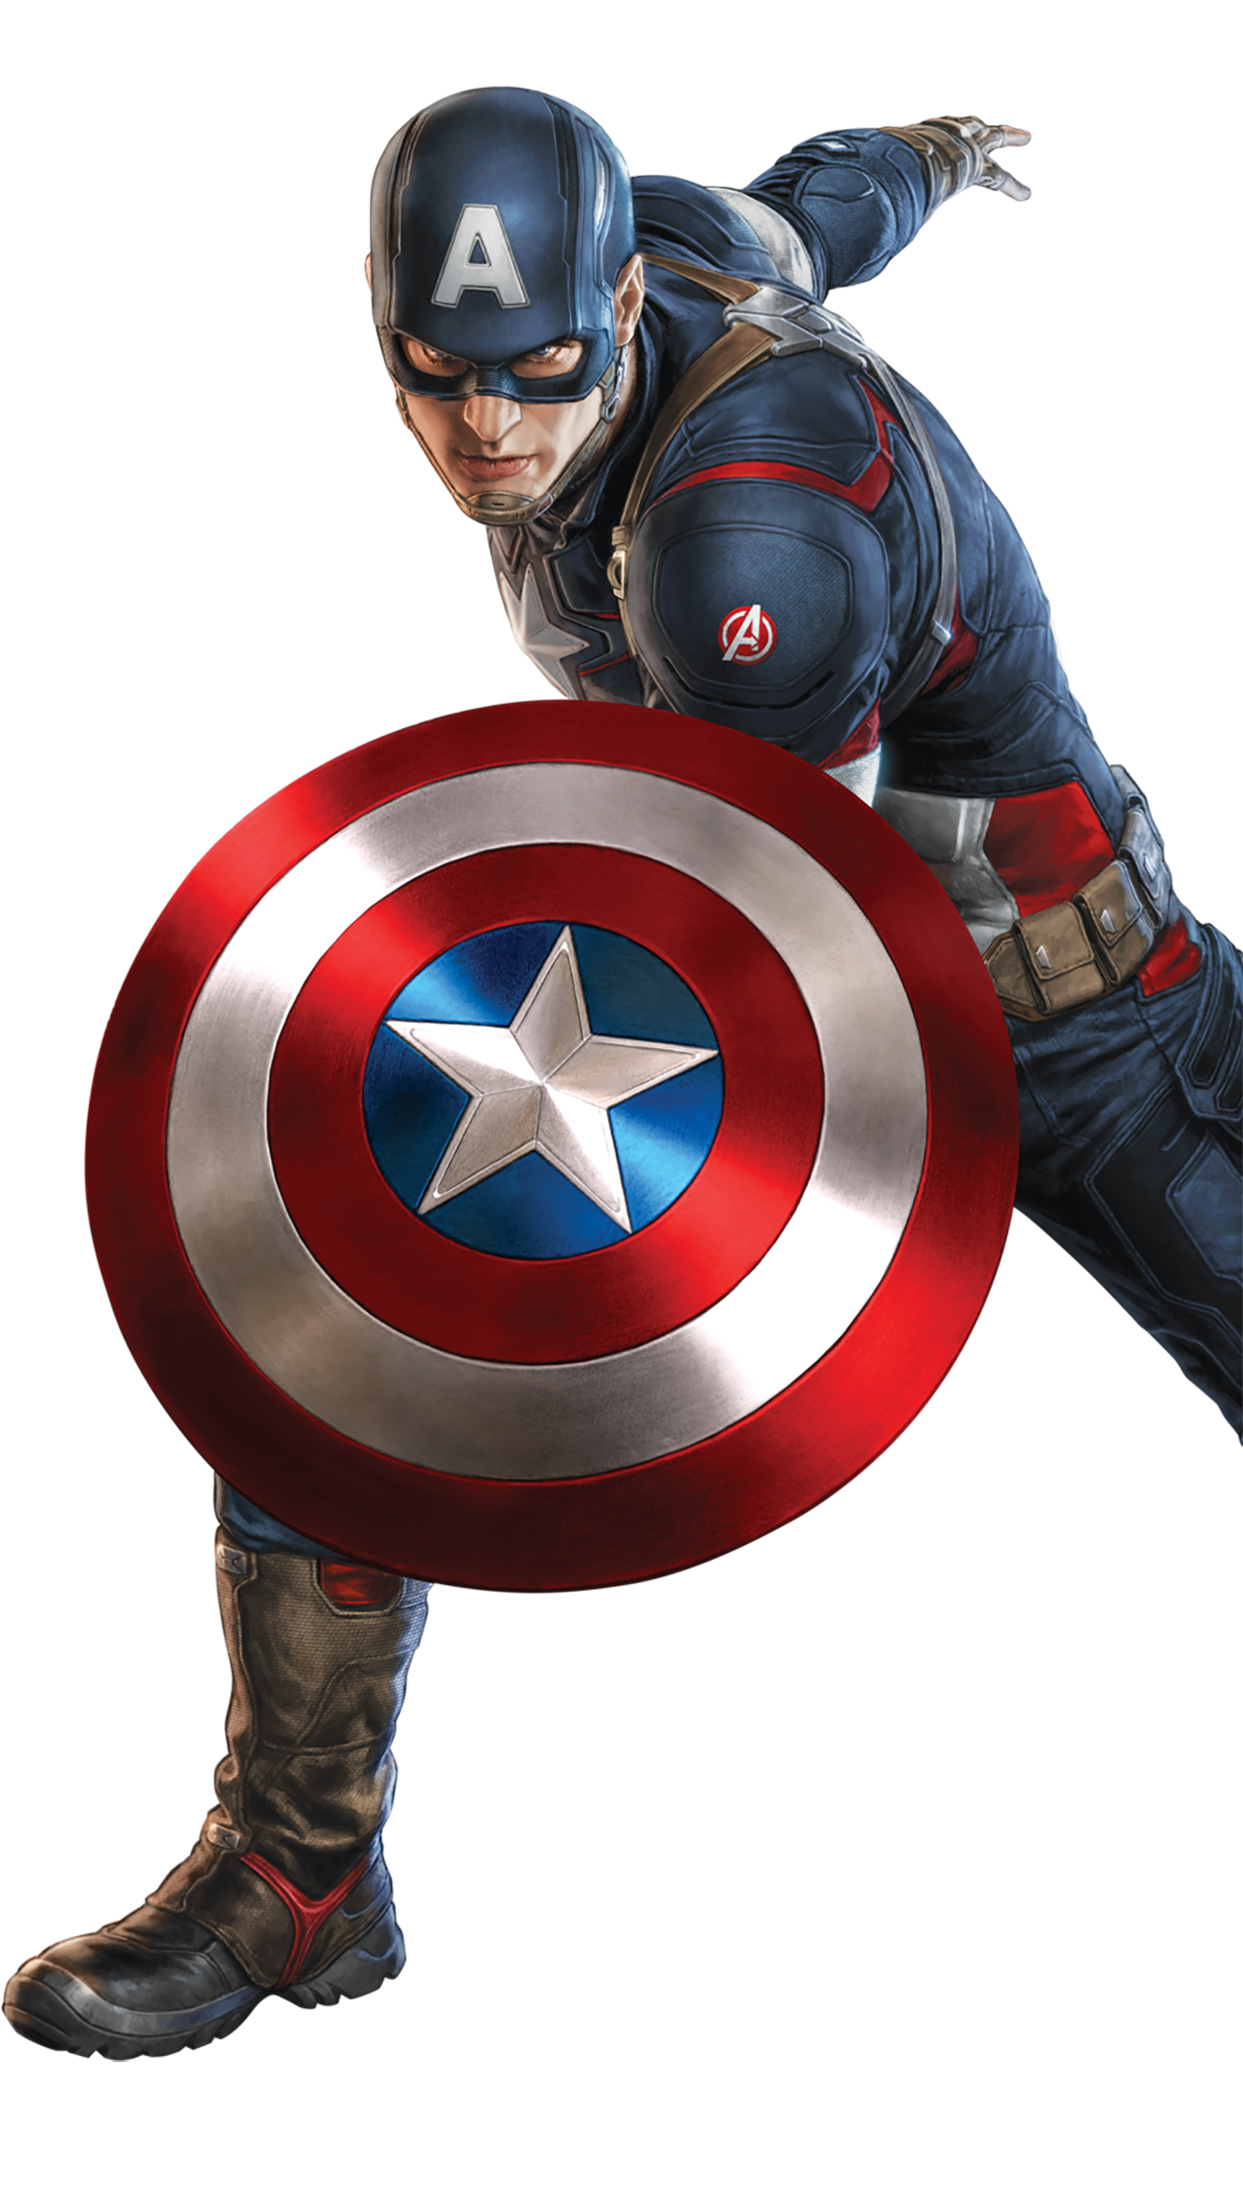 キャプテンアメリカ壁紙,キャプテン・アメリカ,スーパーヒーロー,ヒーロー,架空の人物,アクションフィギュア